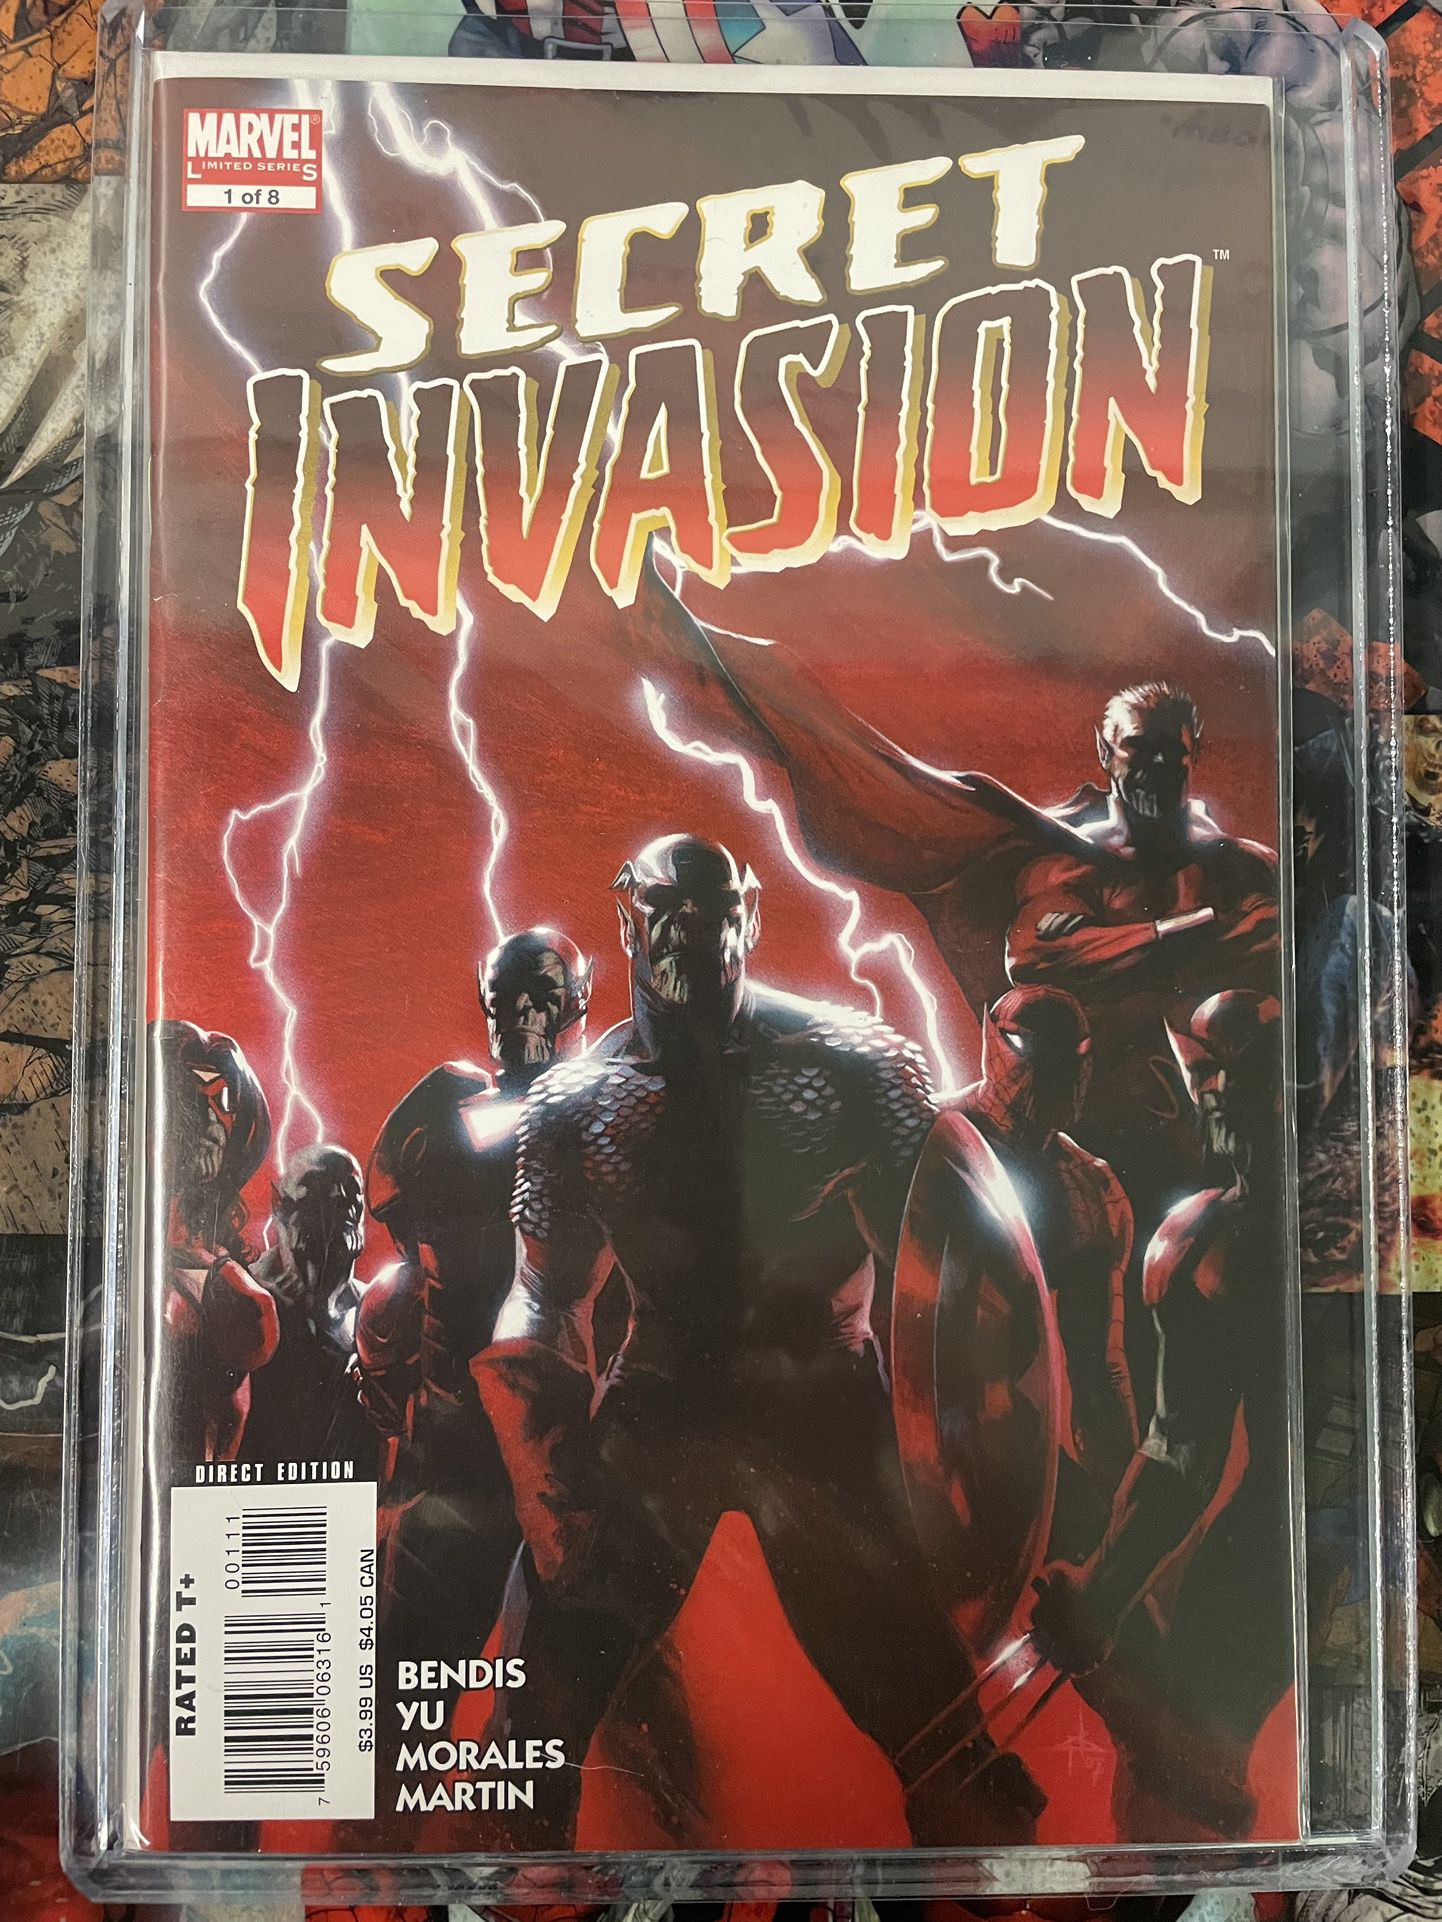 Secret Invasion #1